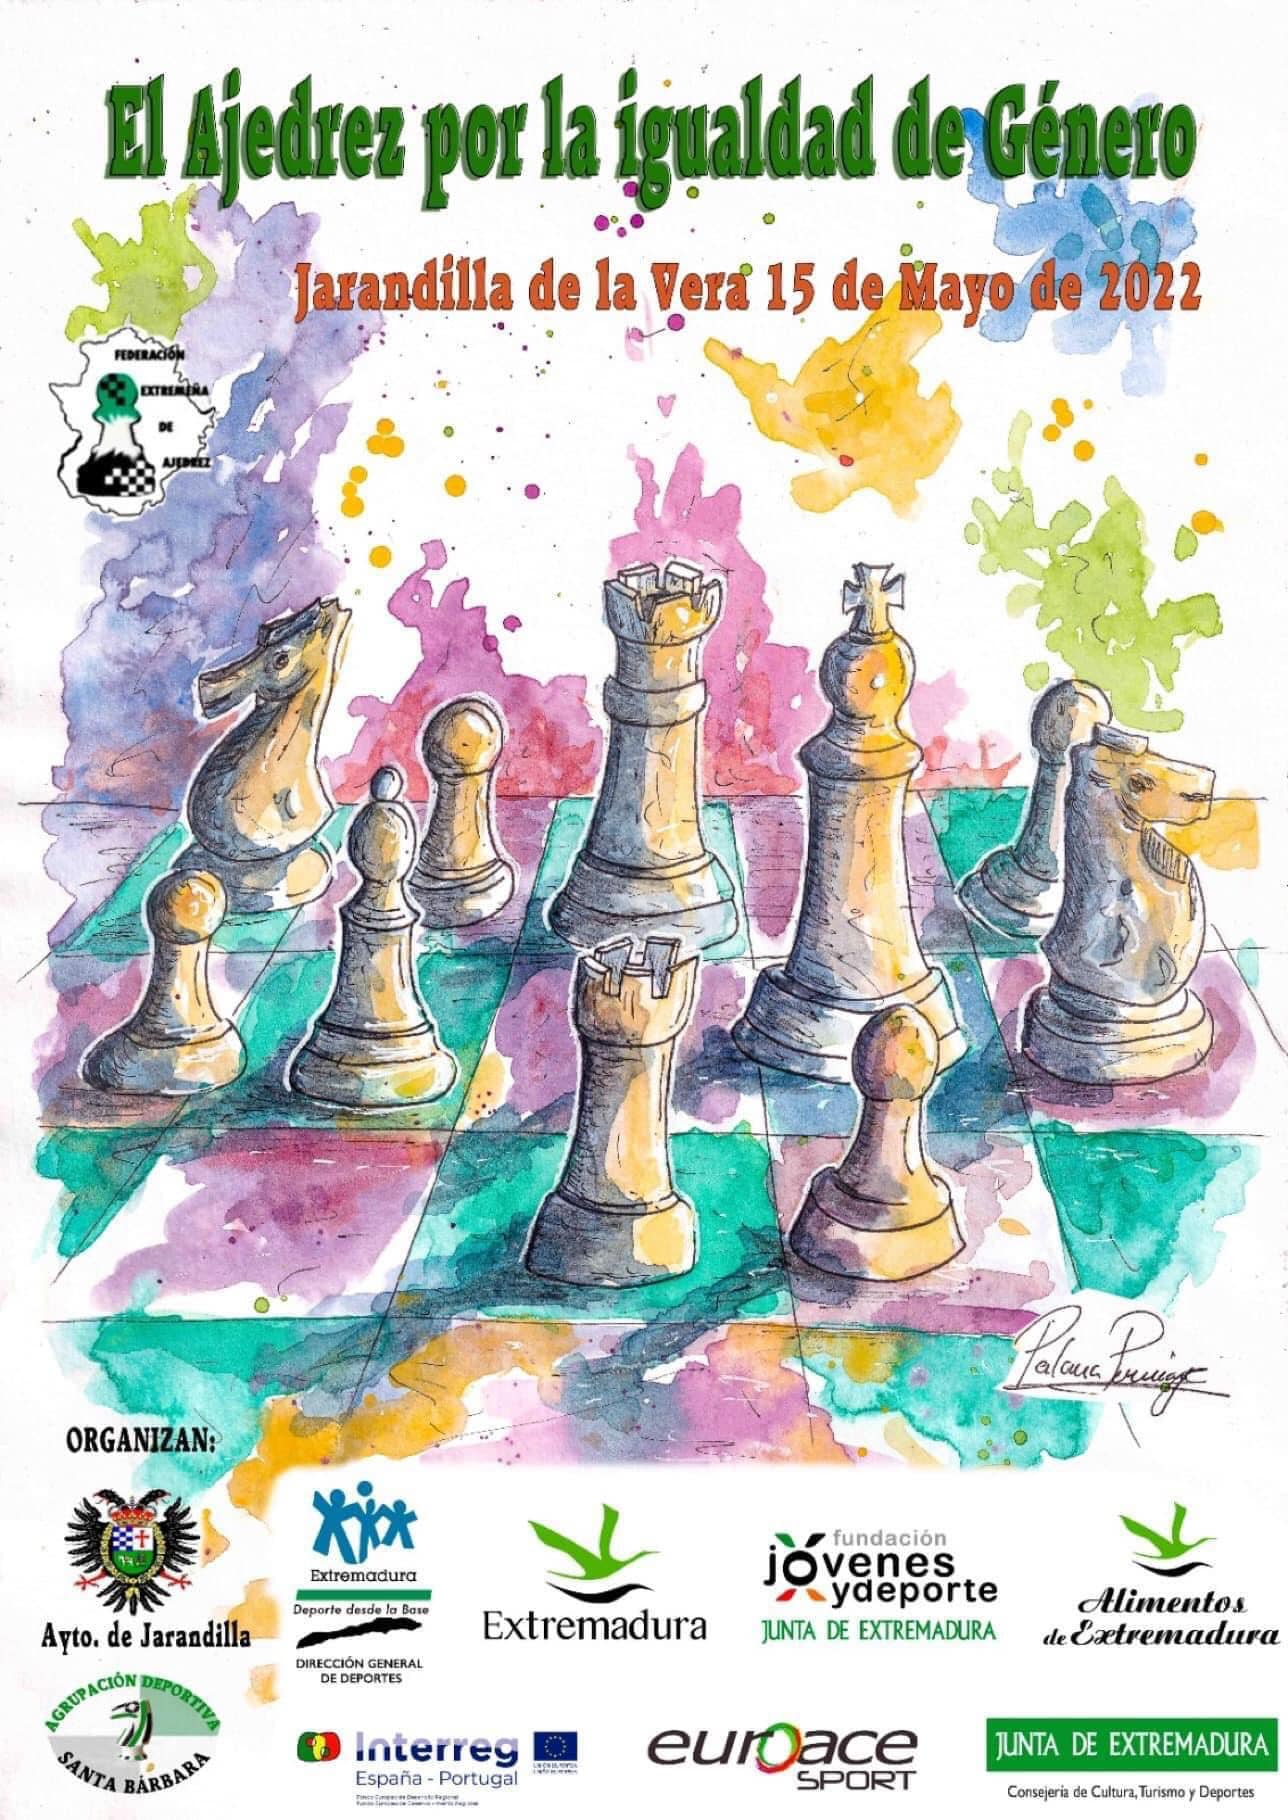 El ajedrez por la igualdad de género (2022) - Jarandilla de la Vera (Cáceres)